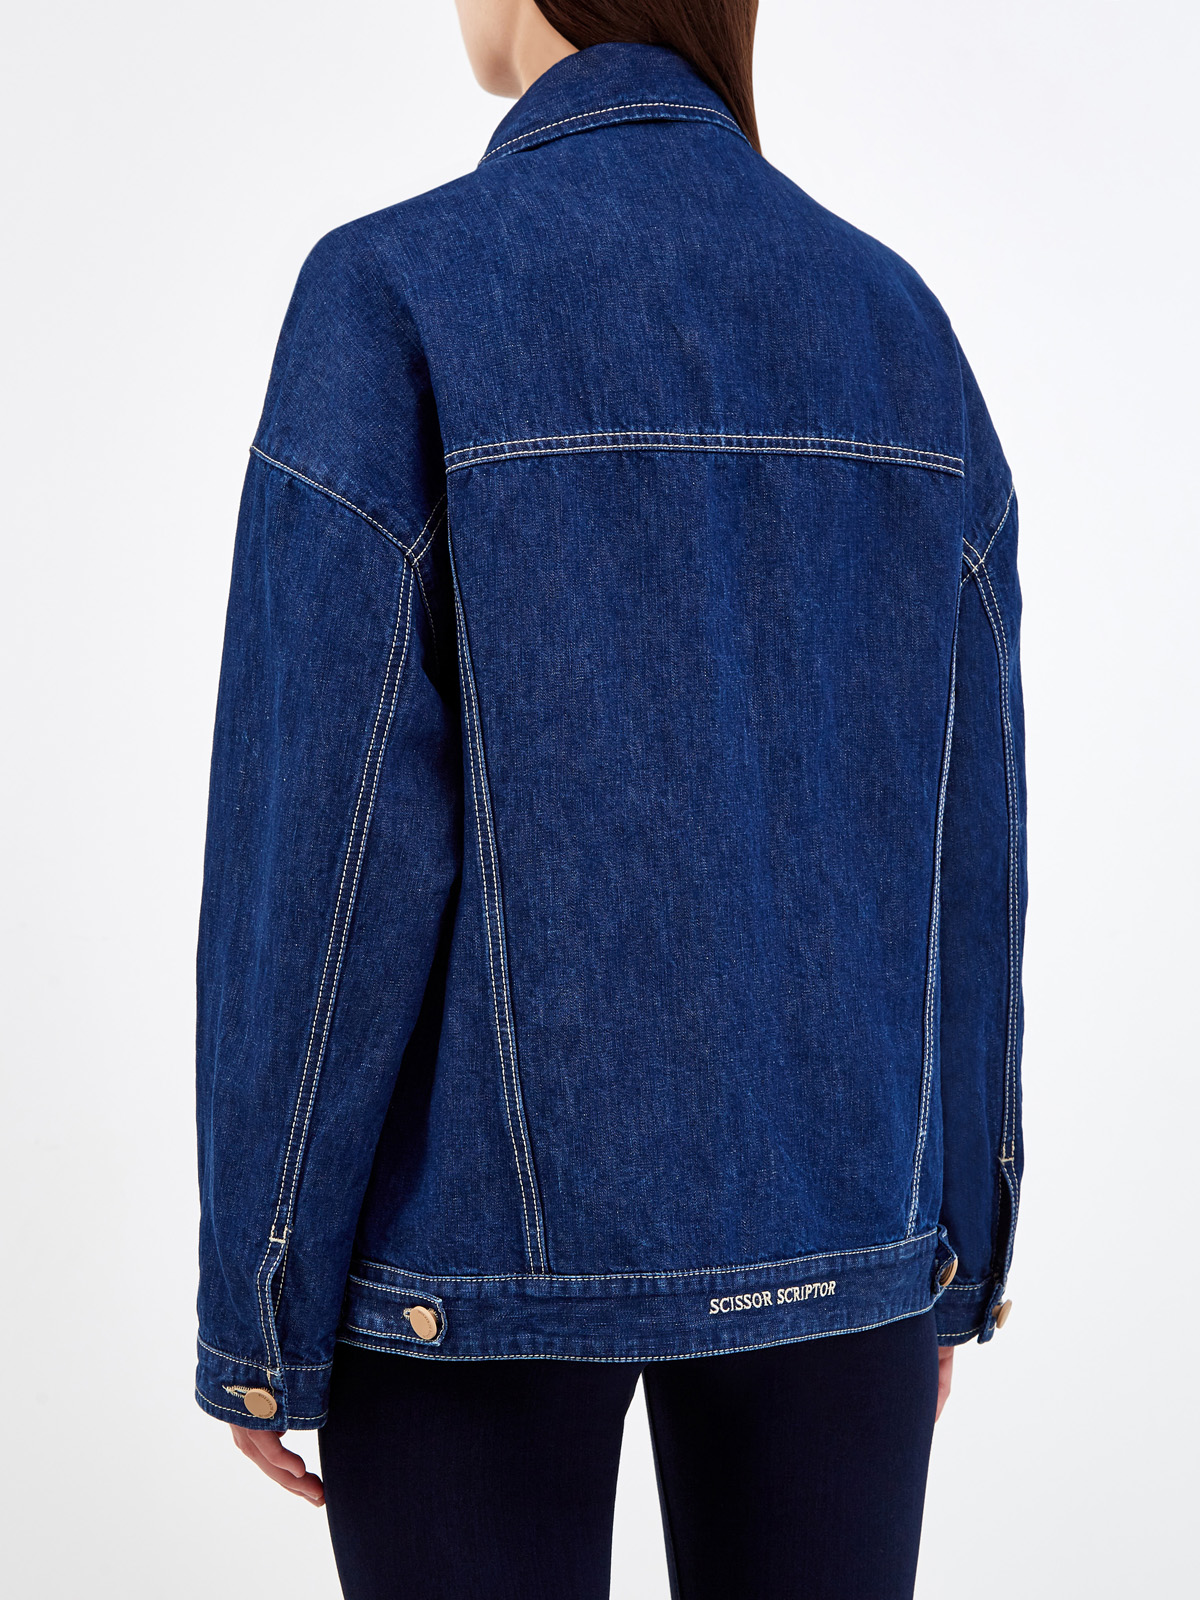 Куртка Diana из хлопка и льна с контрастной прострочкой SCISSOR SCRIPTOR, цвет синий, размер 46;44;42 - фото 4